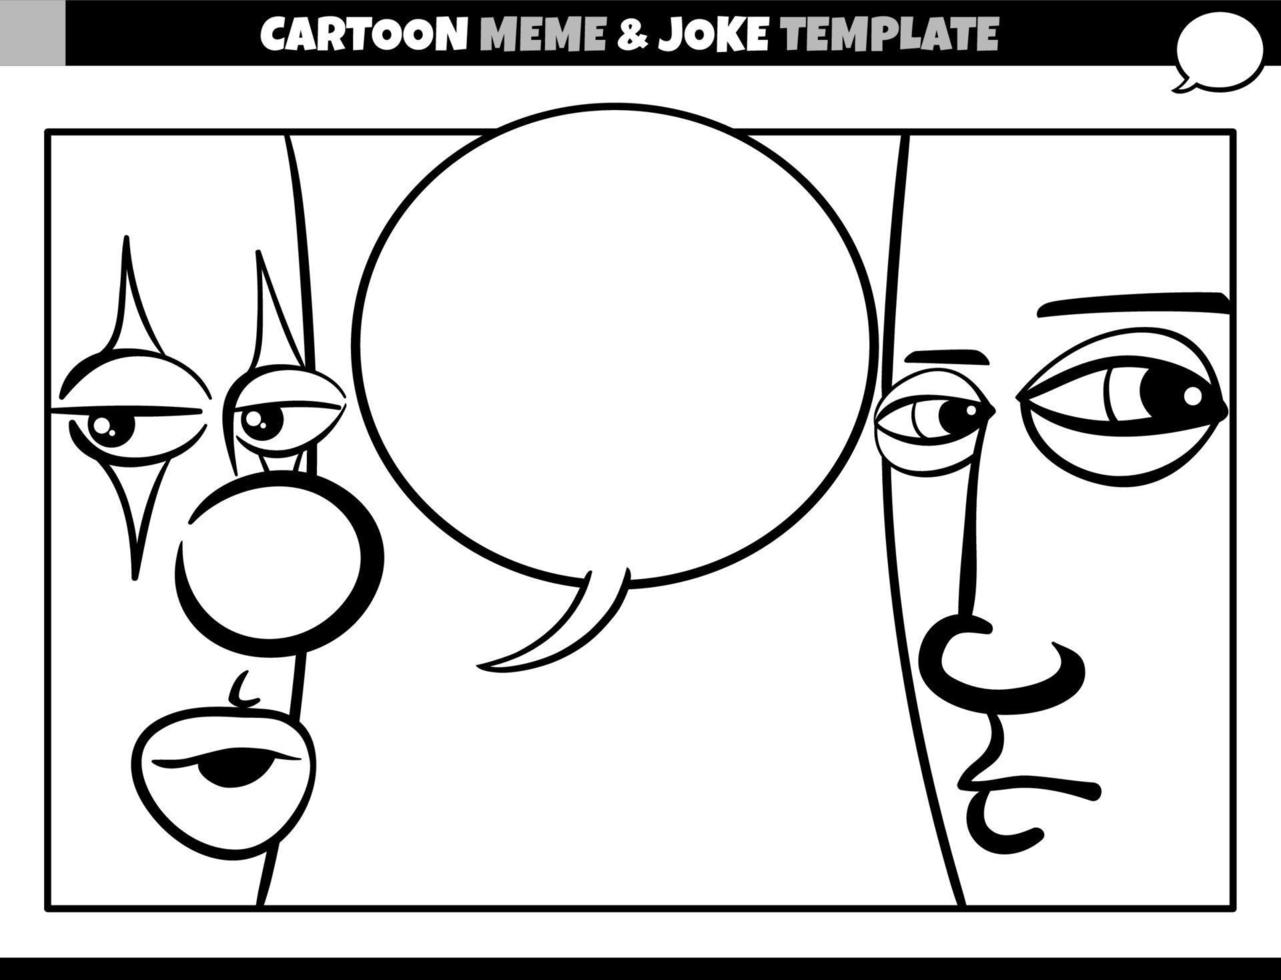 plantilla de meme de dibujos animados en blanco y negro con payaso y hombre vector